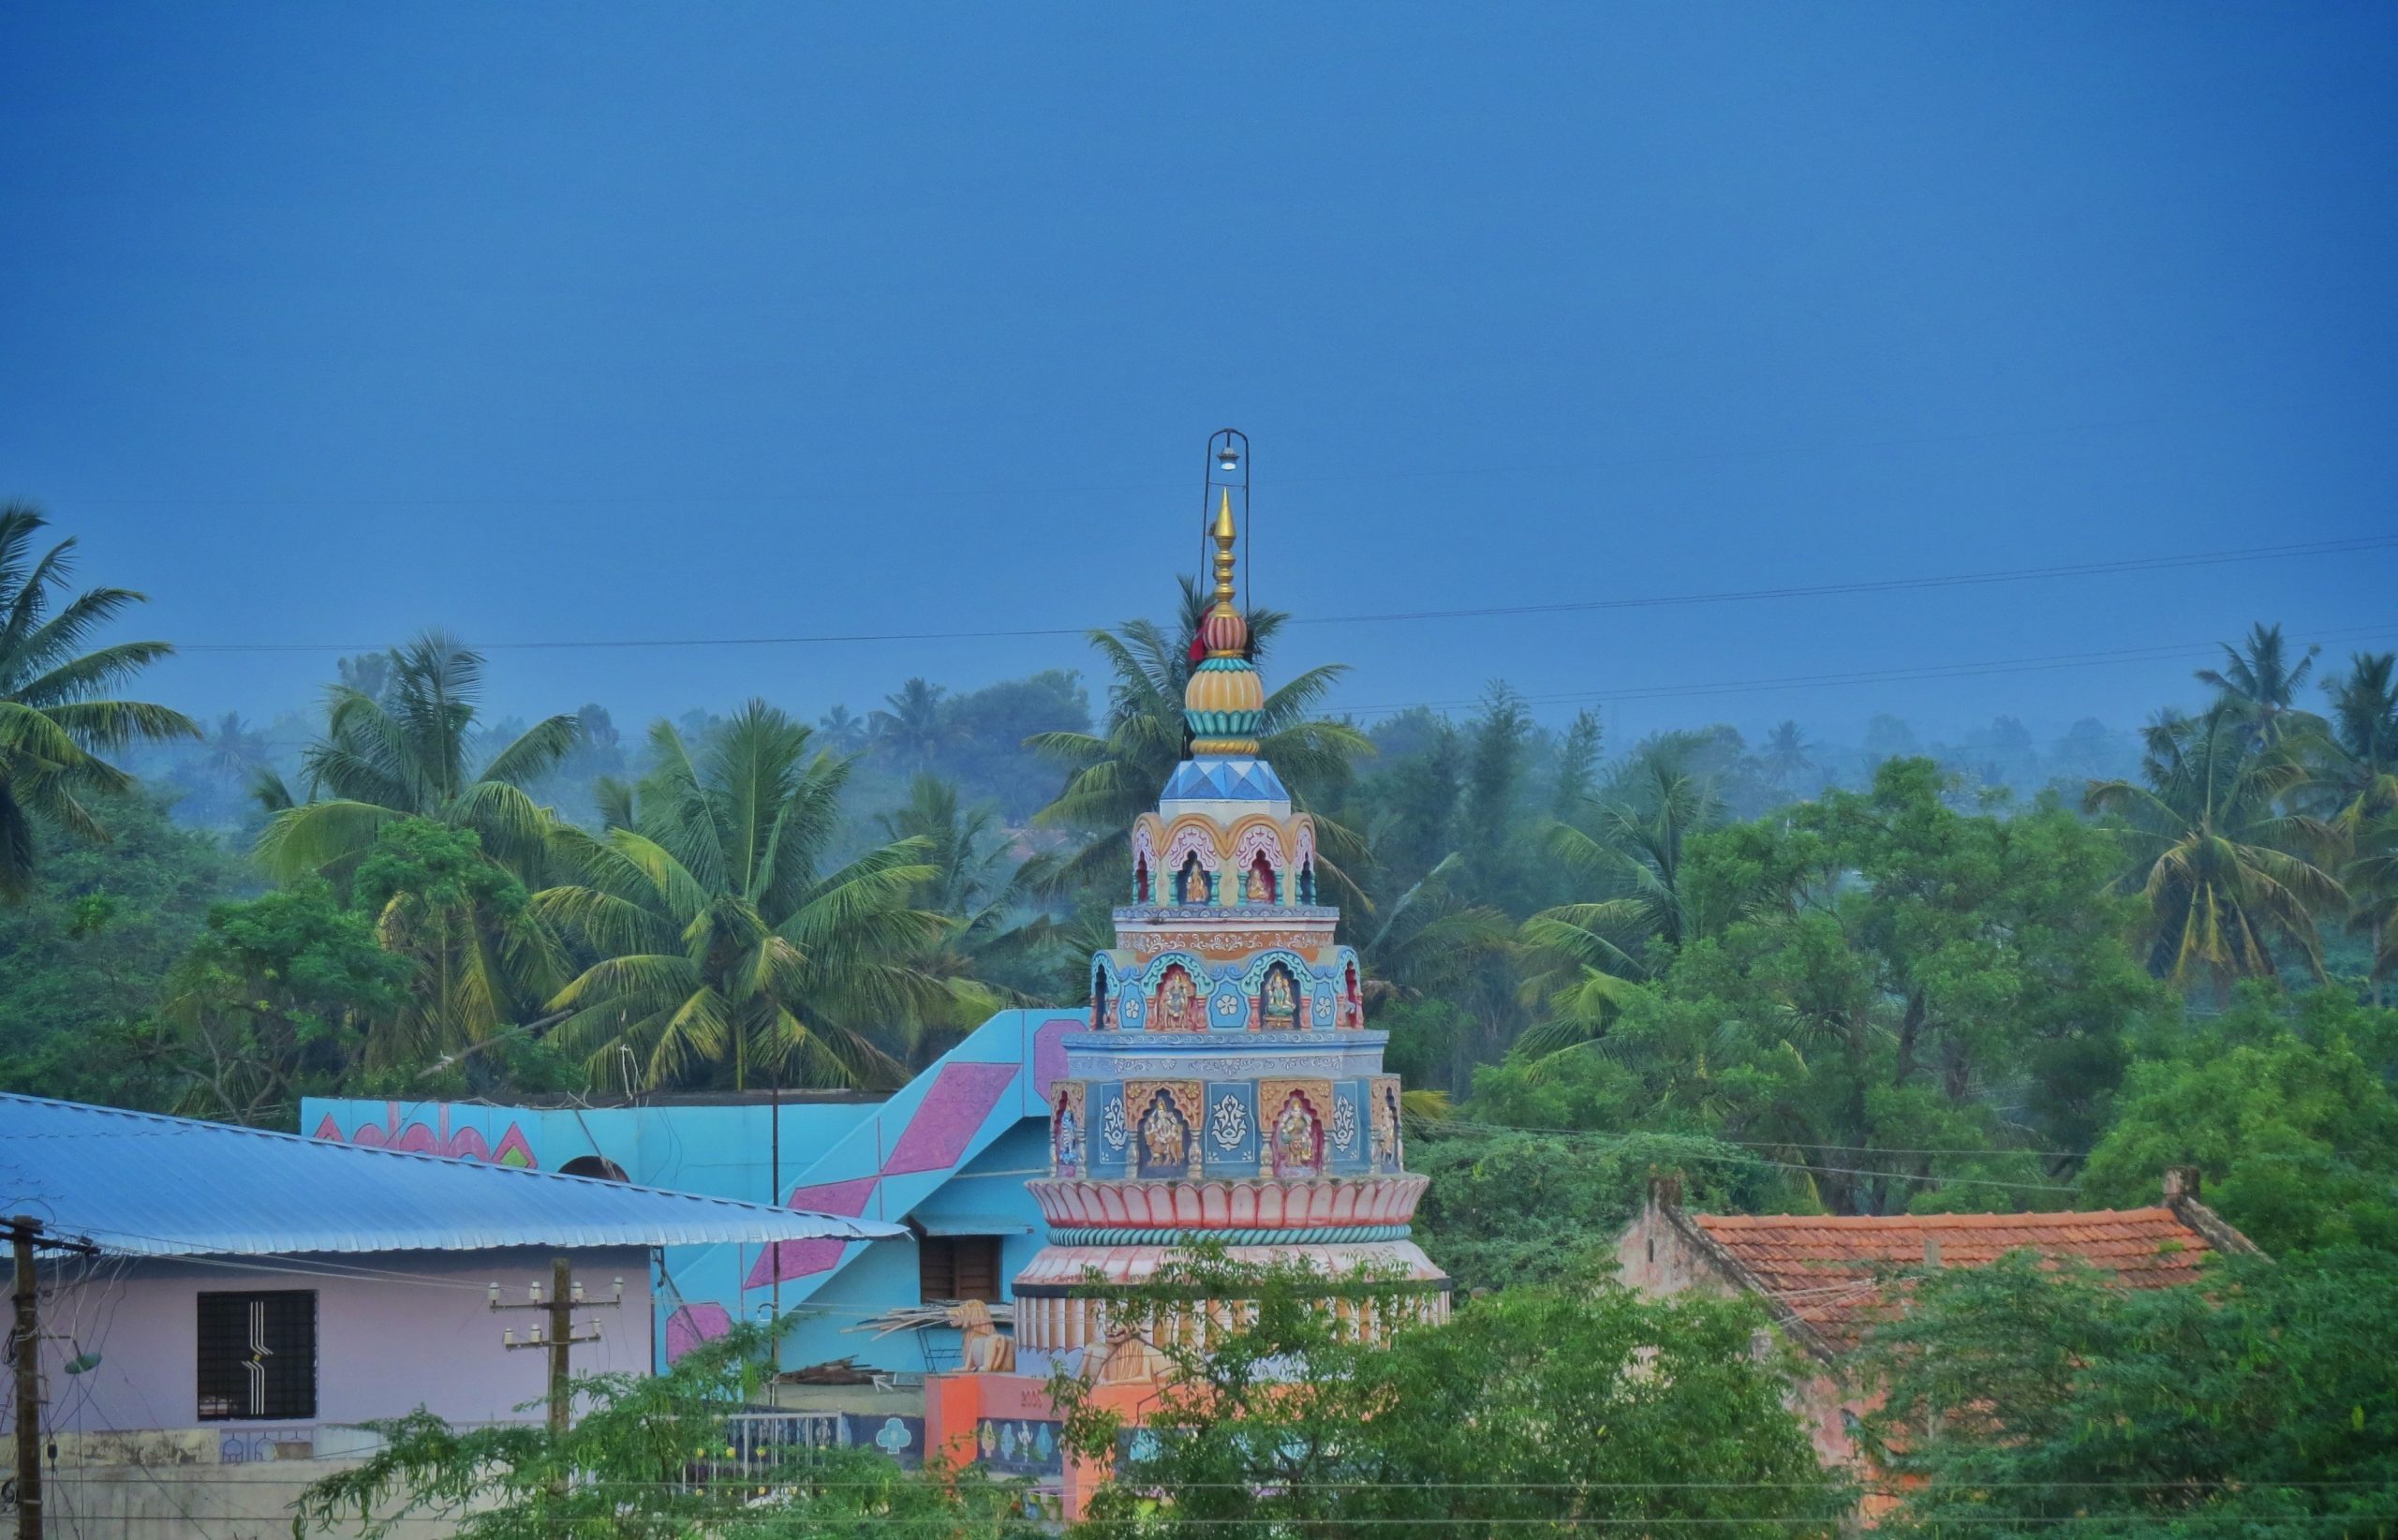 A village temple